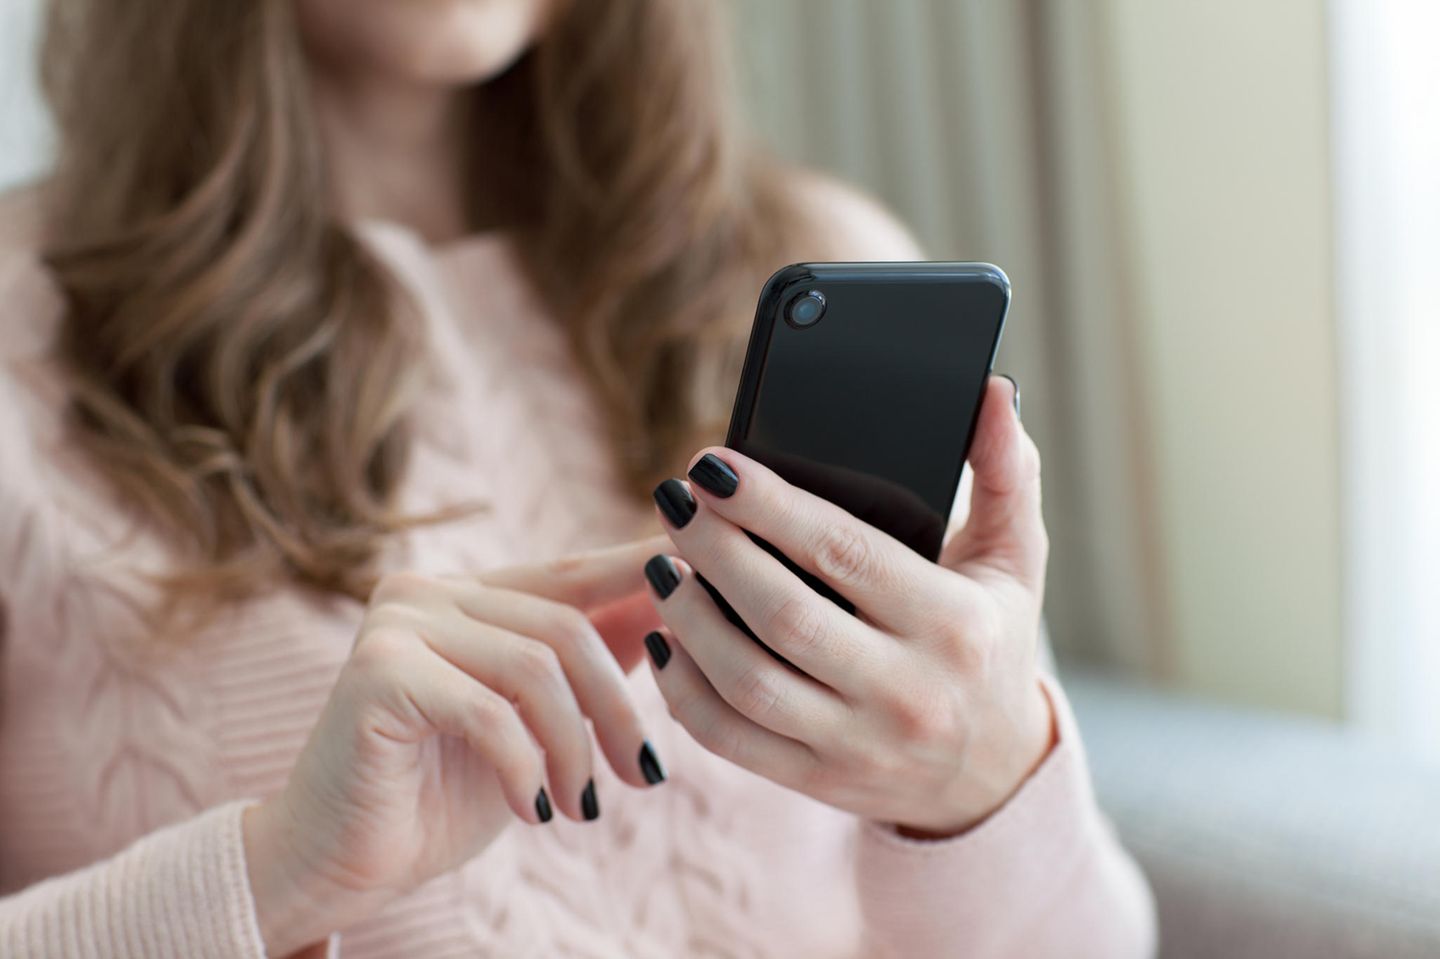 Die besten Mobile Dating-Apps im Test – per Smartphone zum Flirt